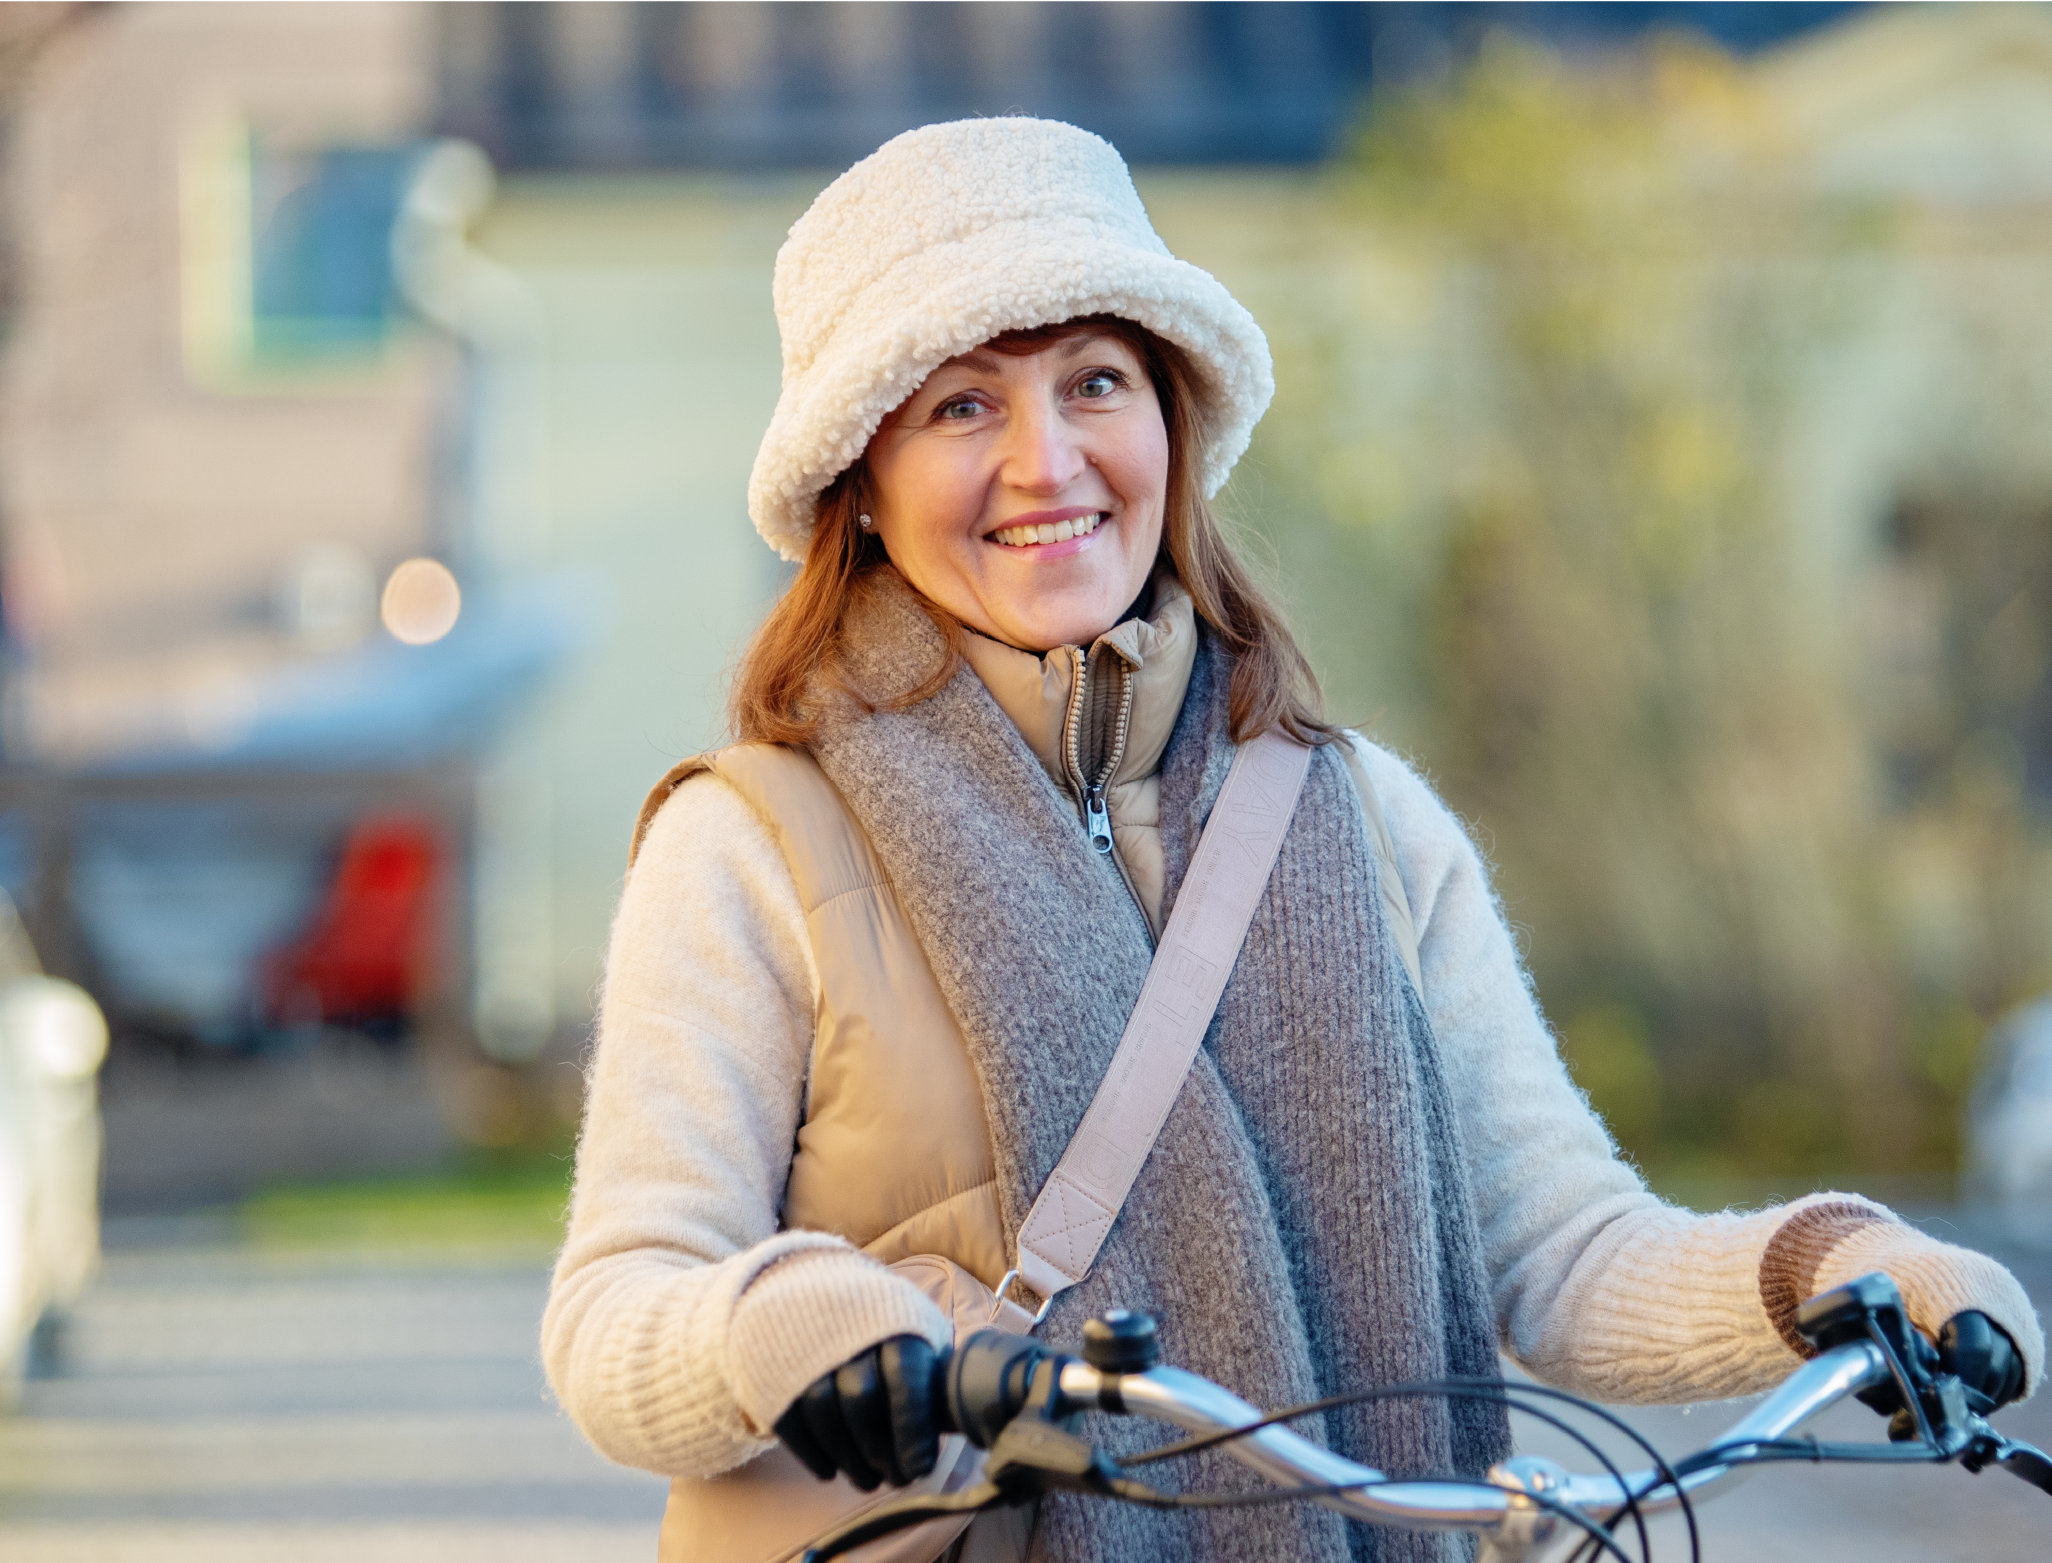 Hymyilevä nainen polkupyörän kanssa.